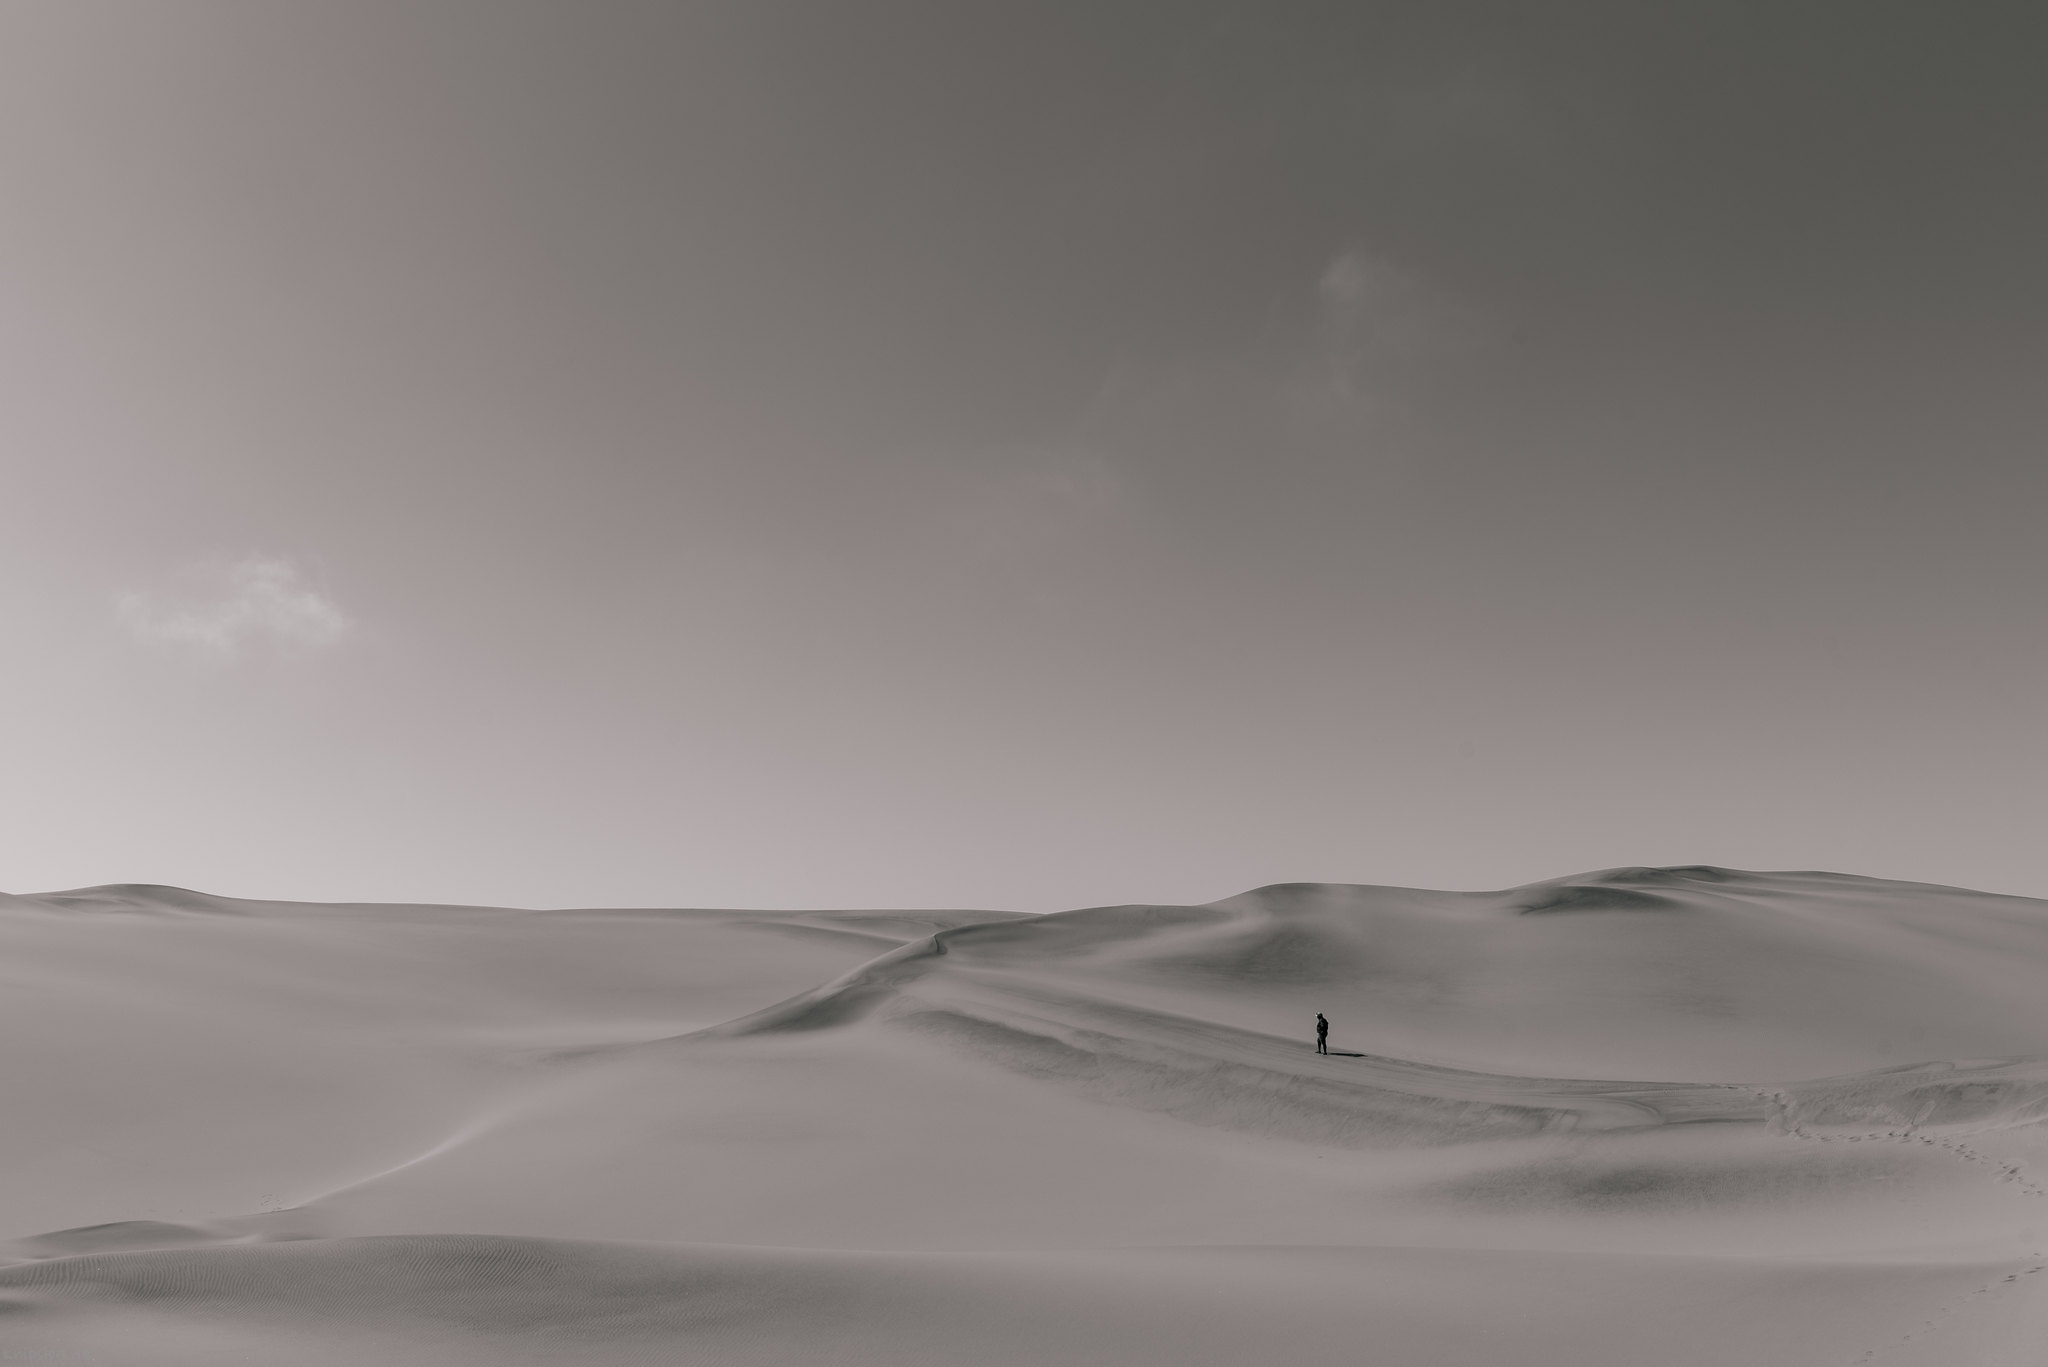 Walking dunes